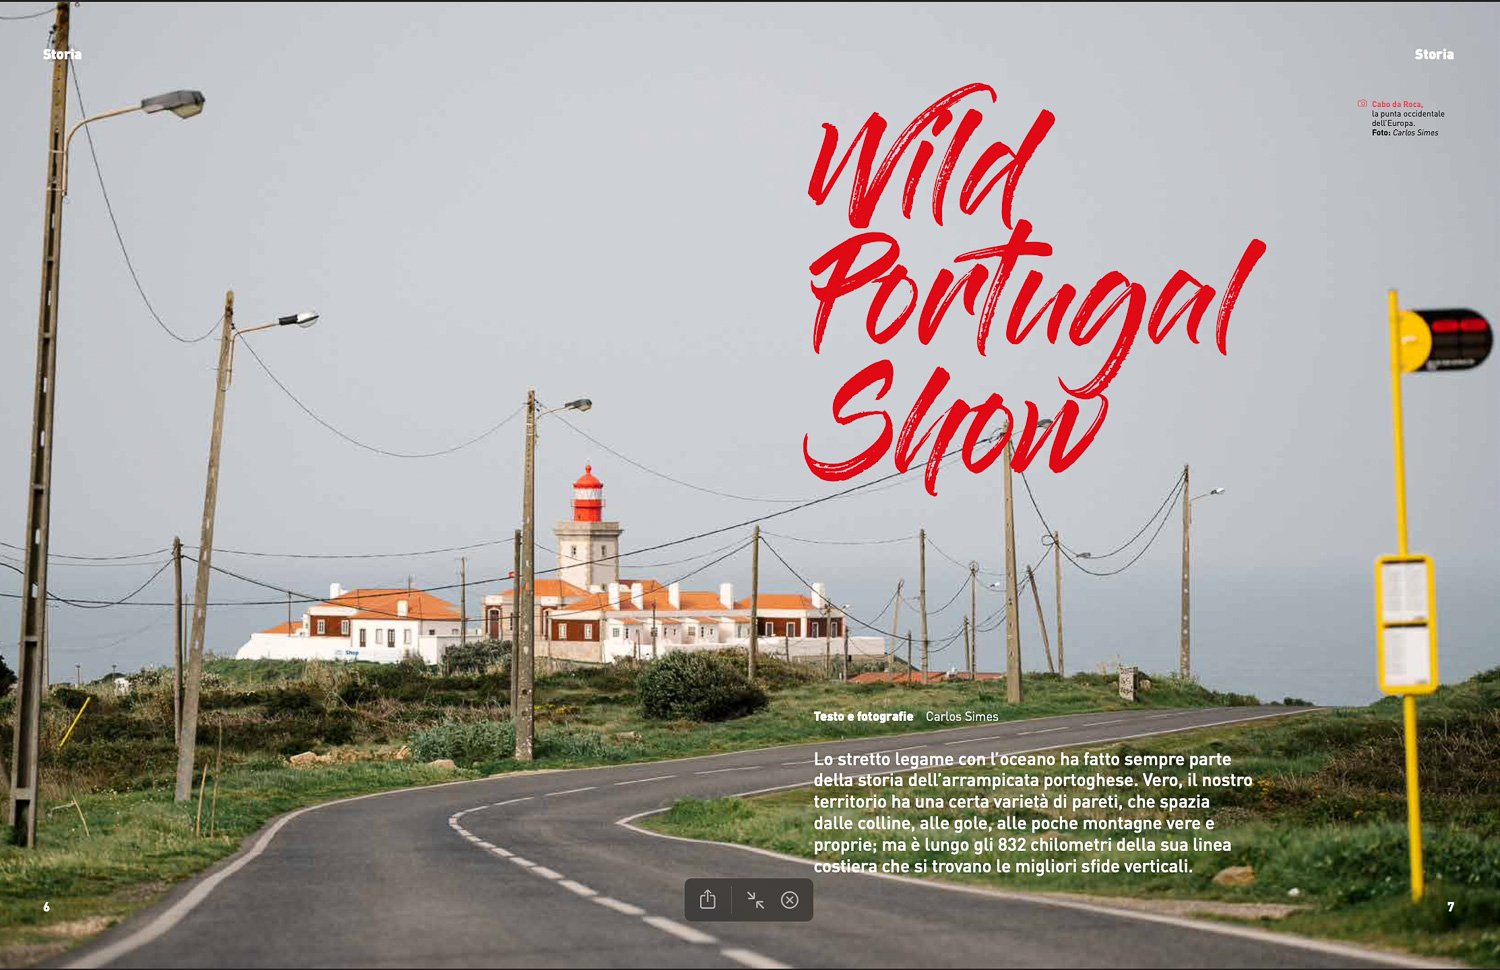 Up Climbing_Wild Portugal Show_© Carlos Simes.jpg